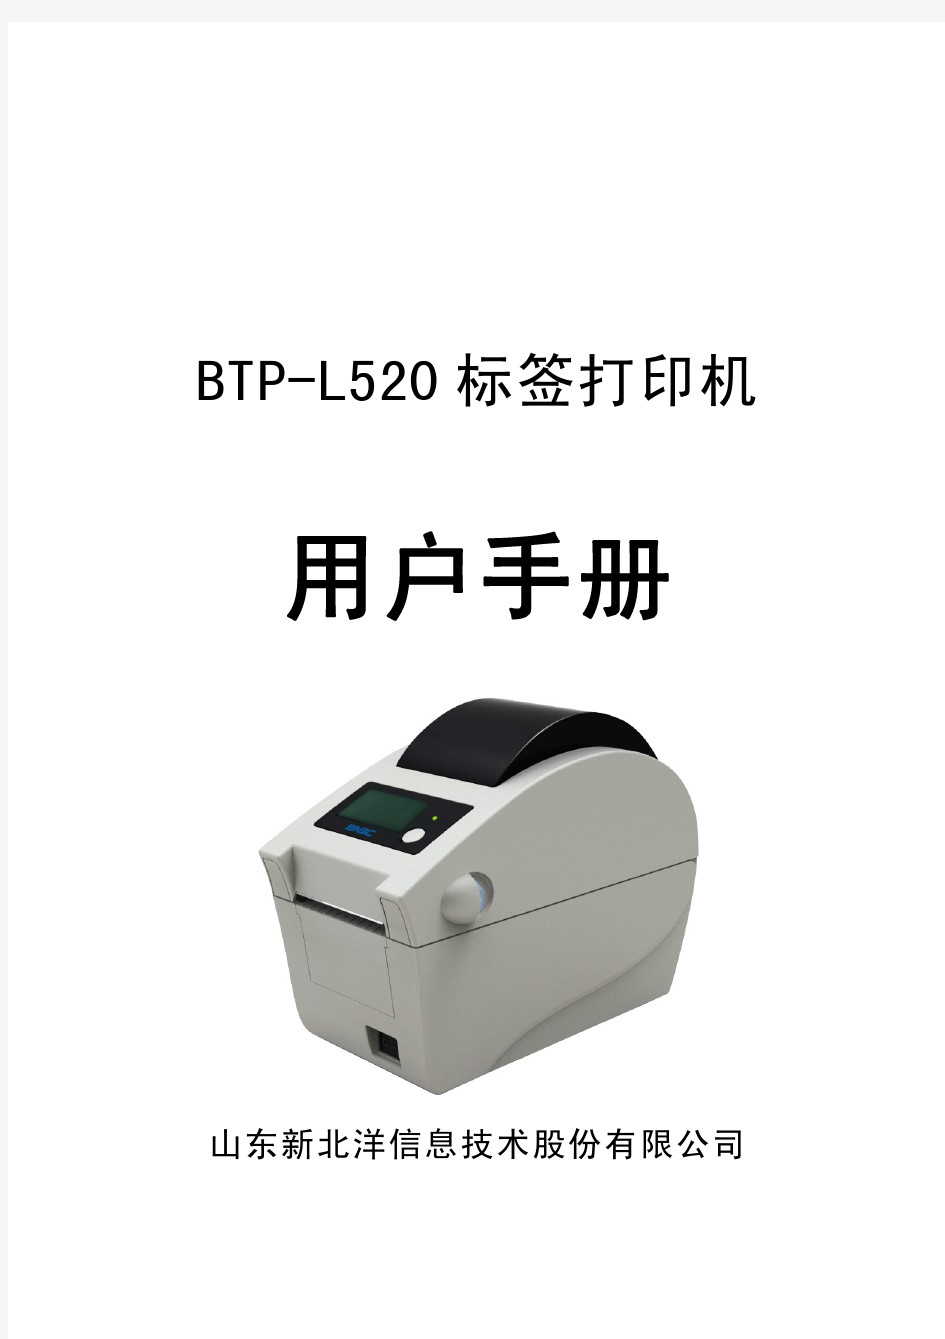 北洋打印机BTP-L520_ARM9_ 用户手册V1.0